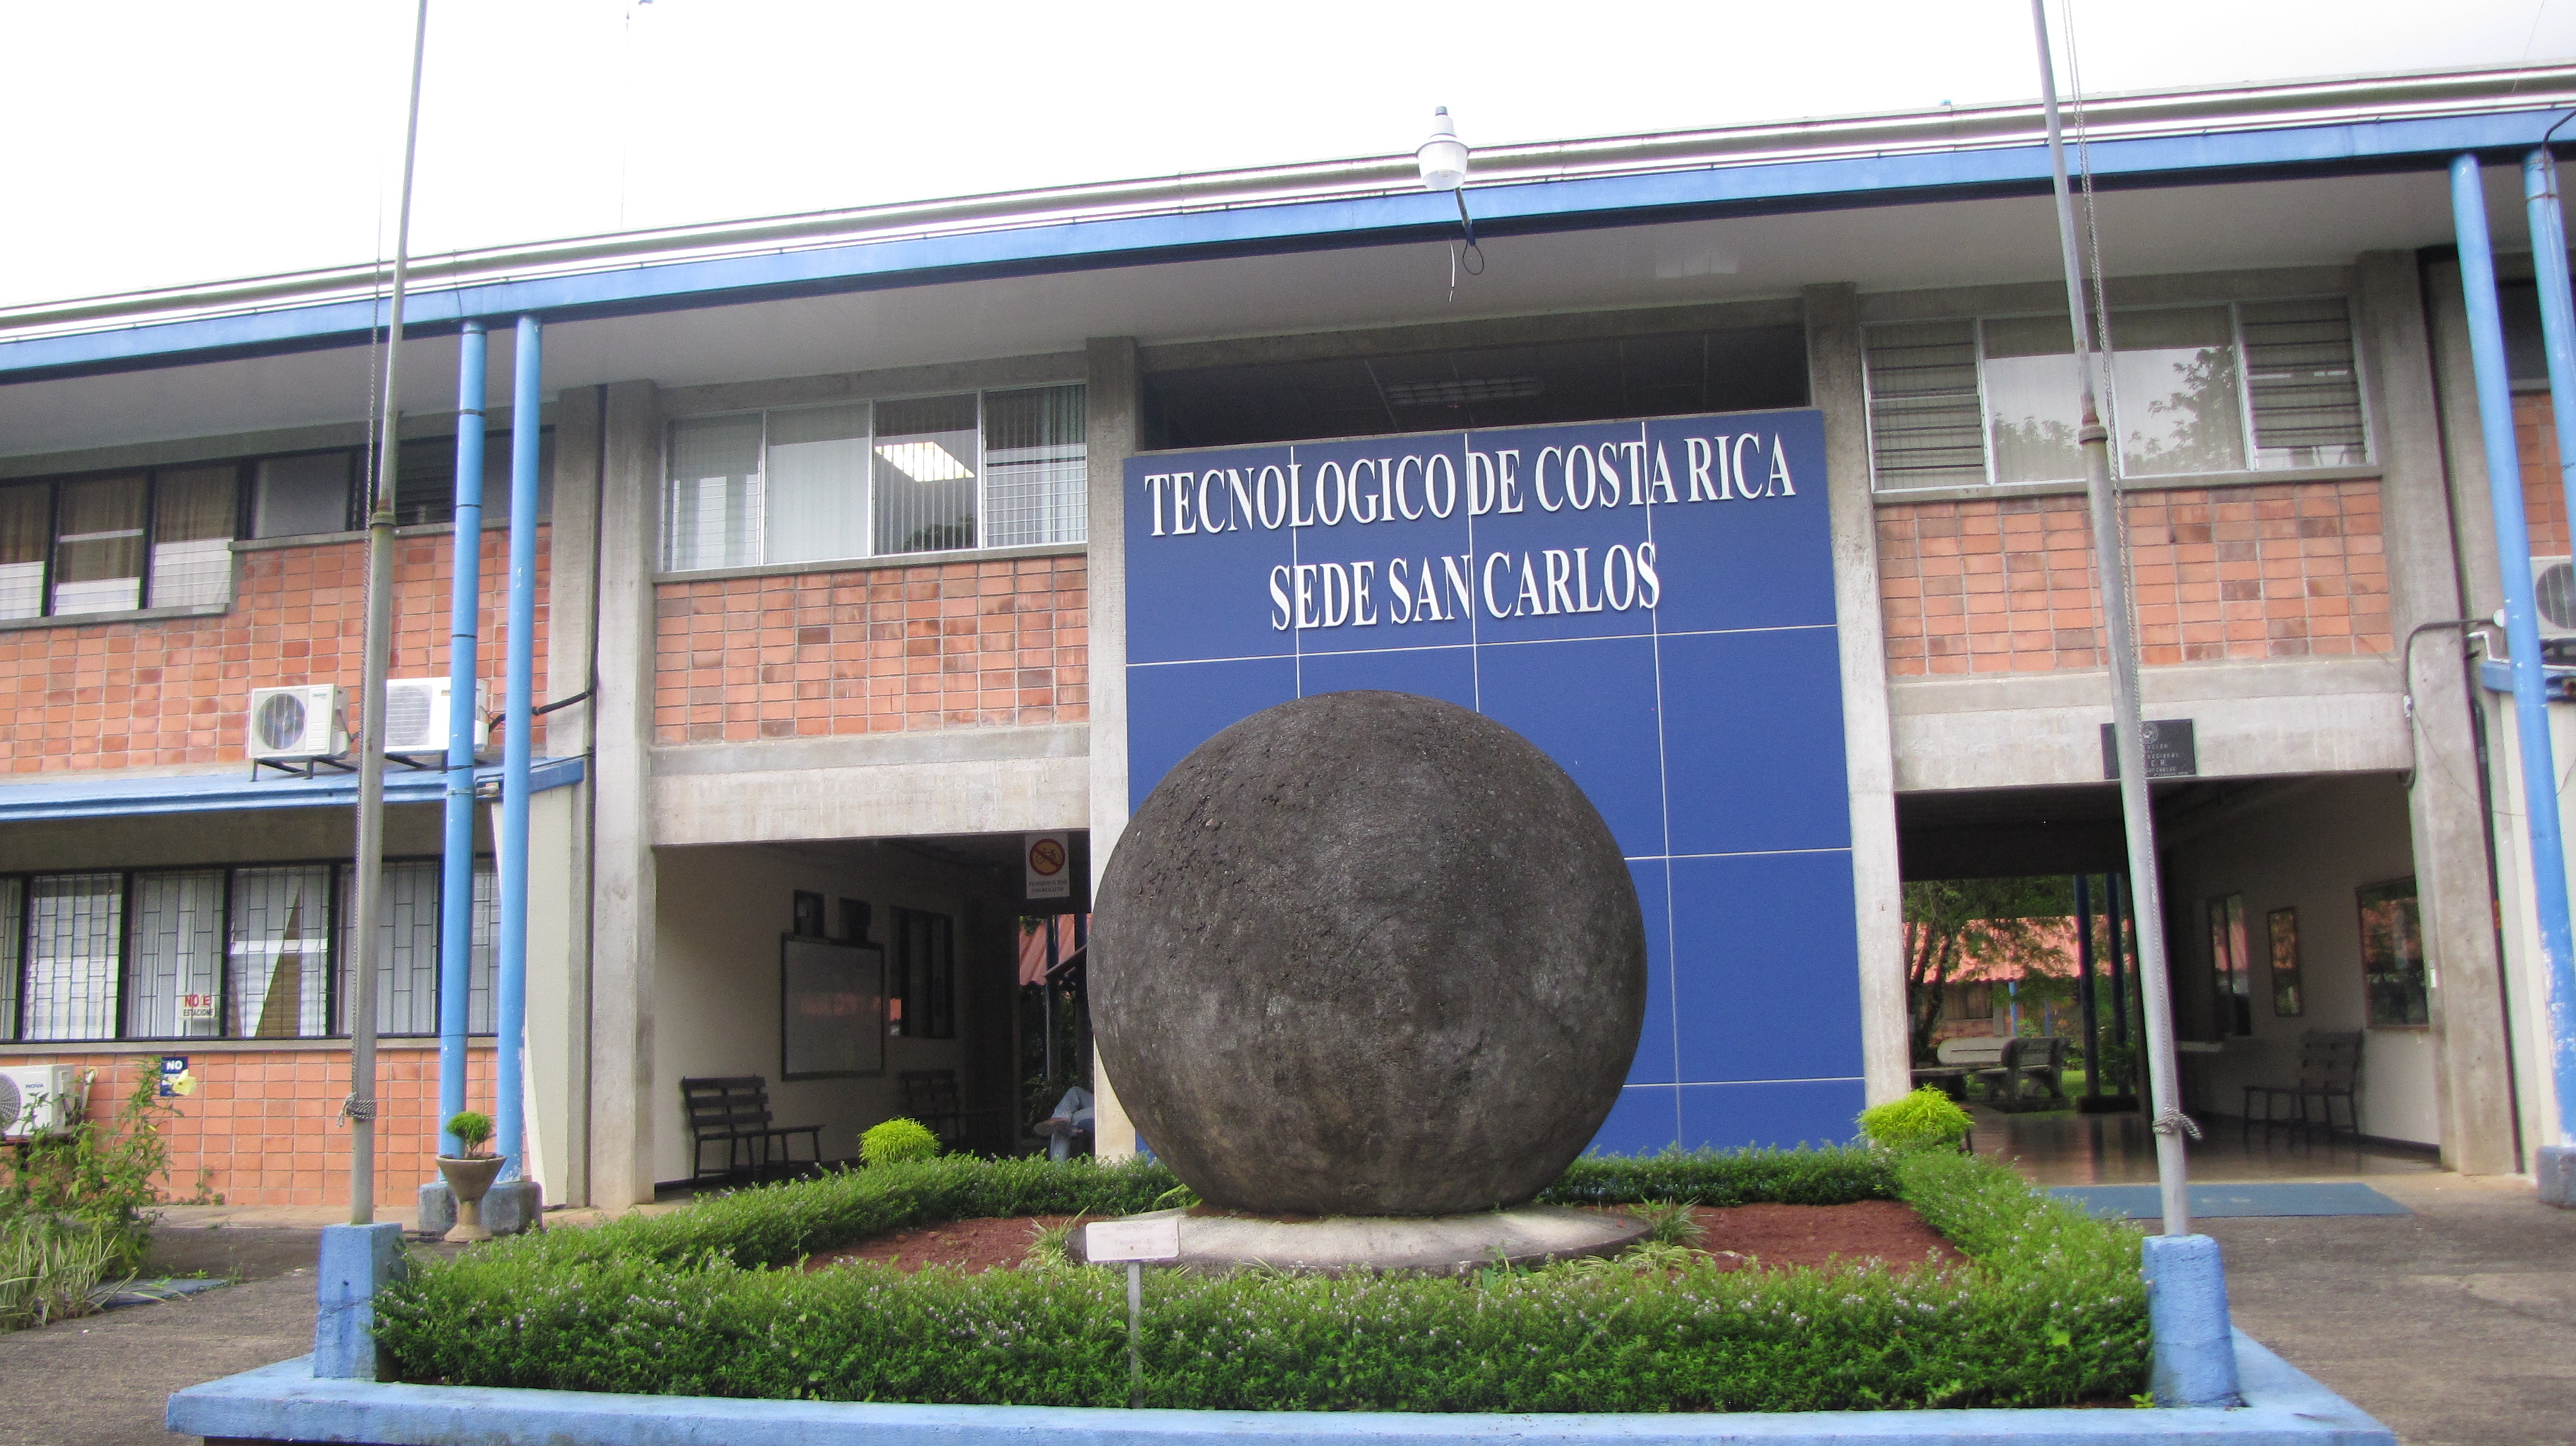 Entrada principal del Campus Tecnológico Local San Carlos, en la que se aprecia la réplica de una esfere precolombina.